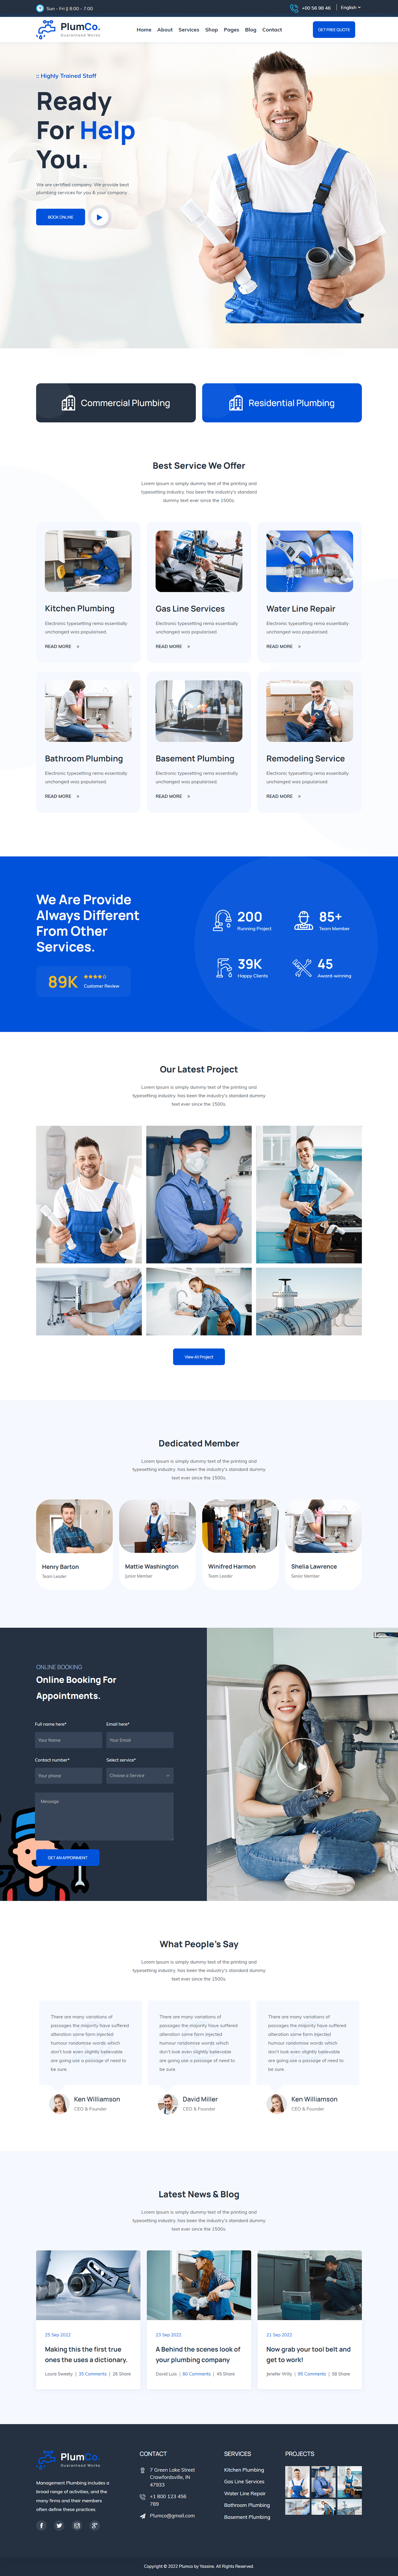 Logo Design plumber plumber service Plumbing UI/UX ux Webdesign Website Website Design websitedesign